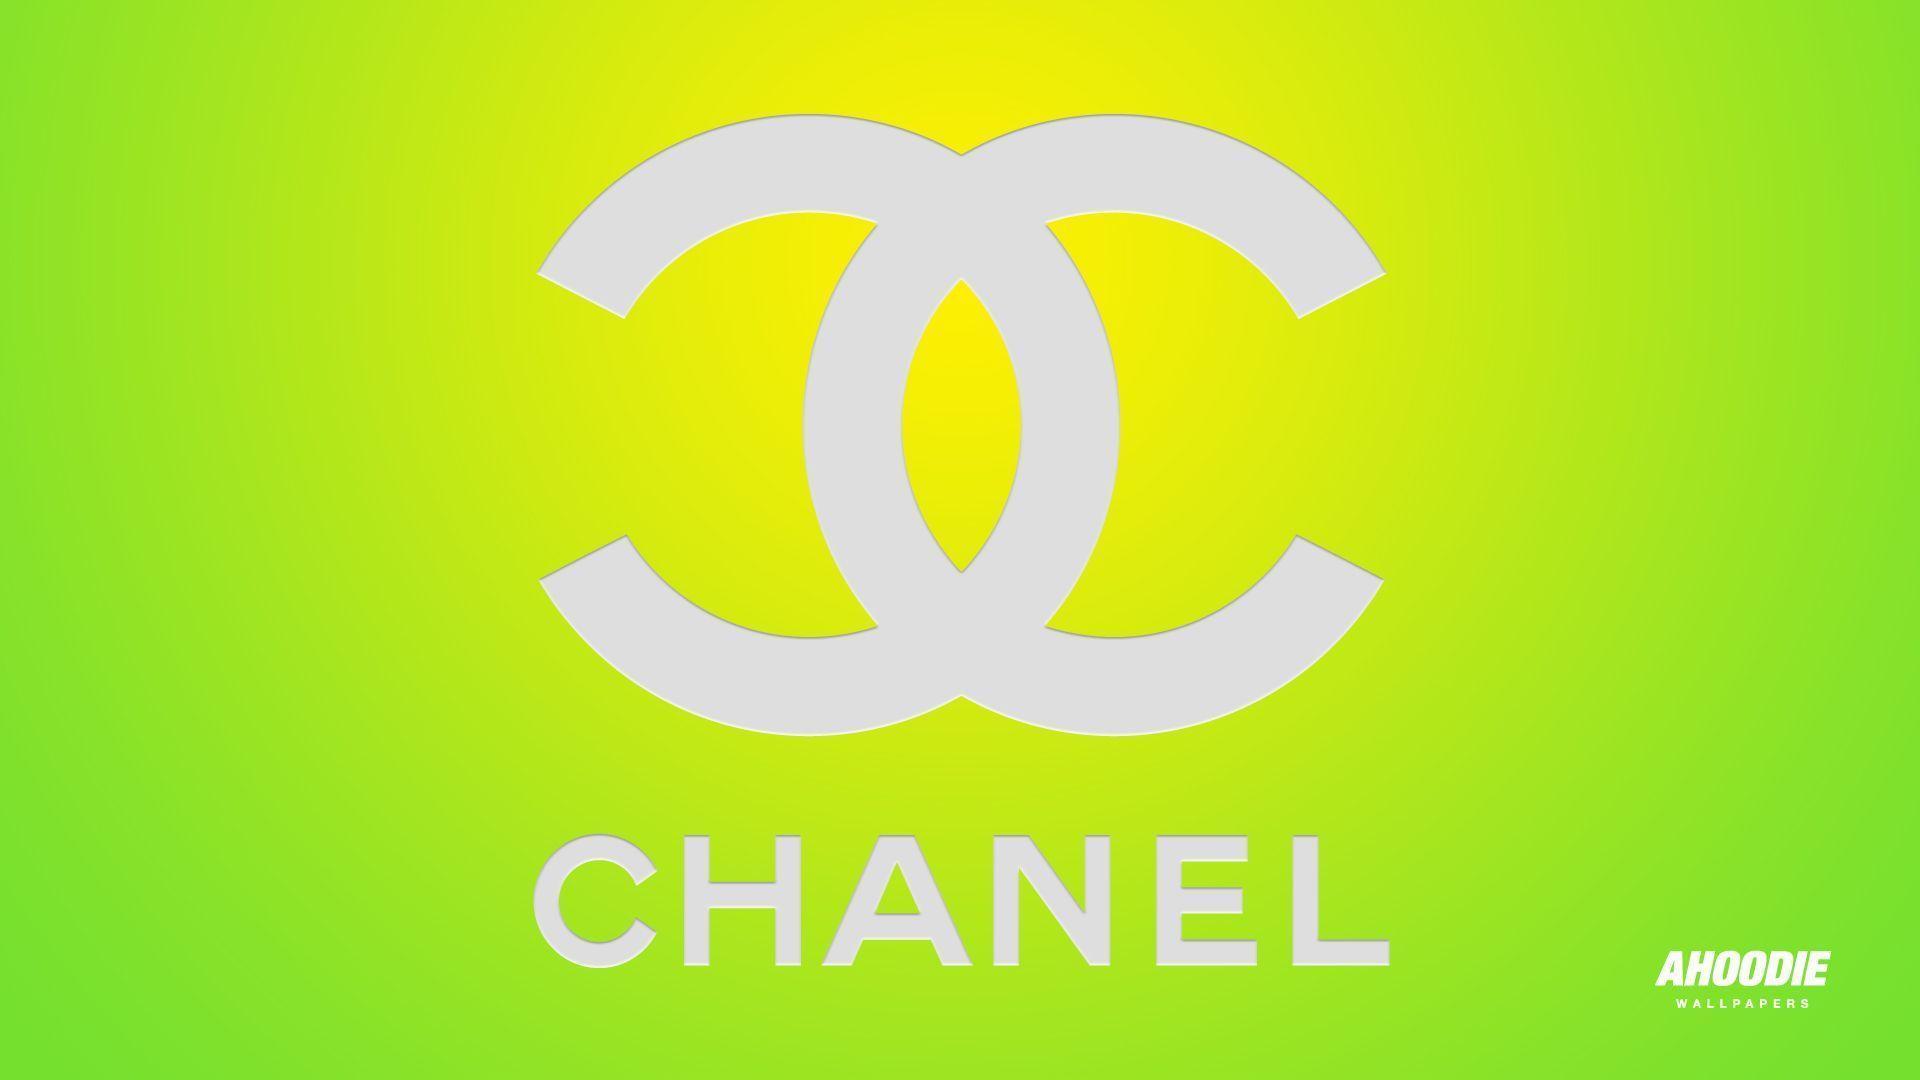 1920x1080 Chanel Wallpaper Background tải xuống miễn phí